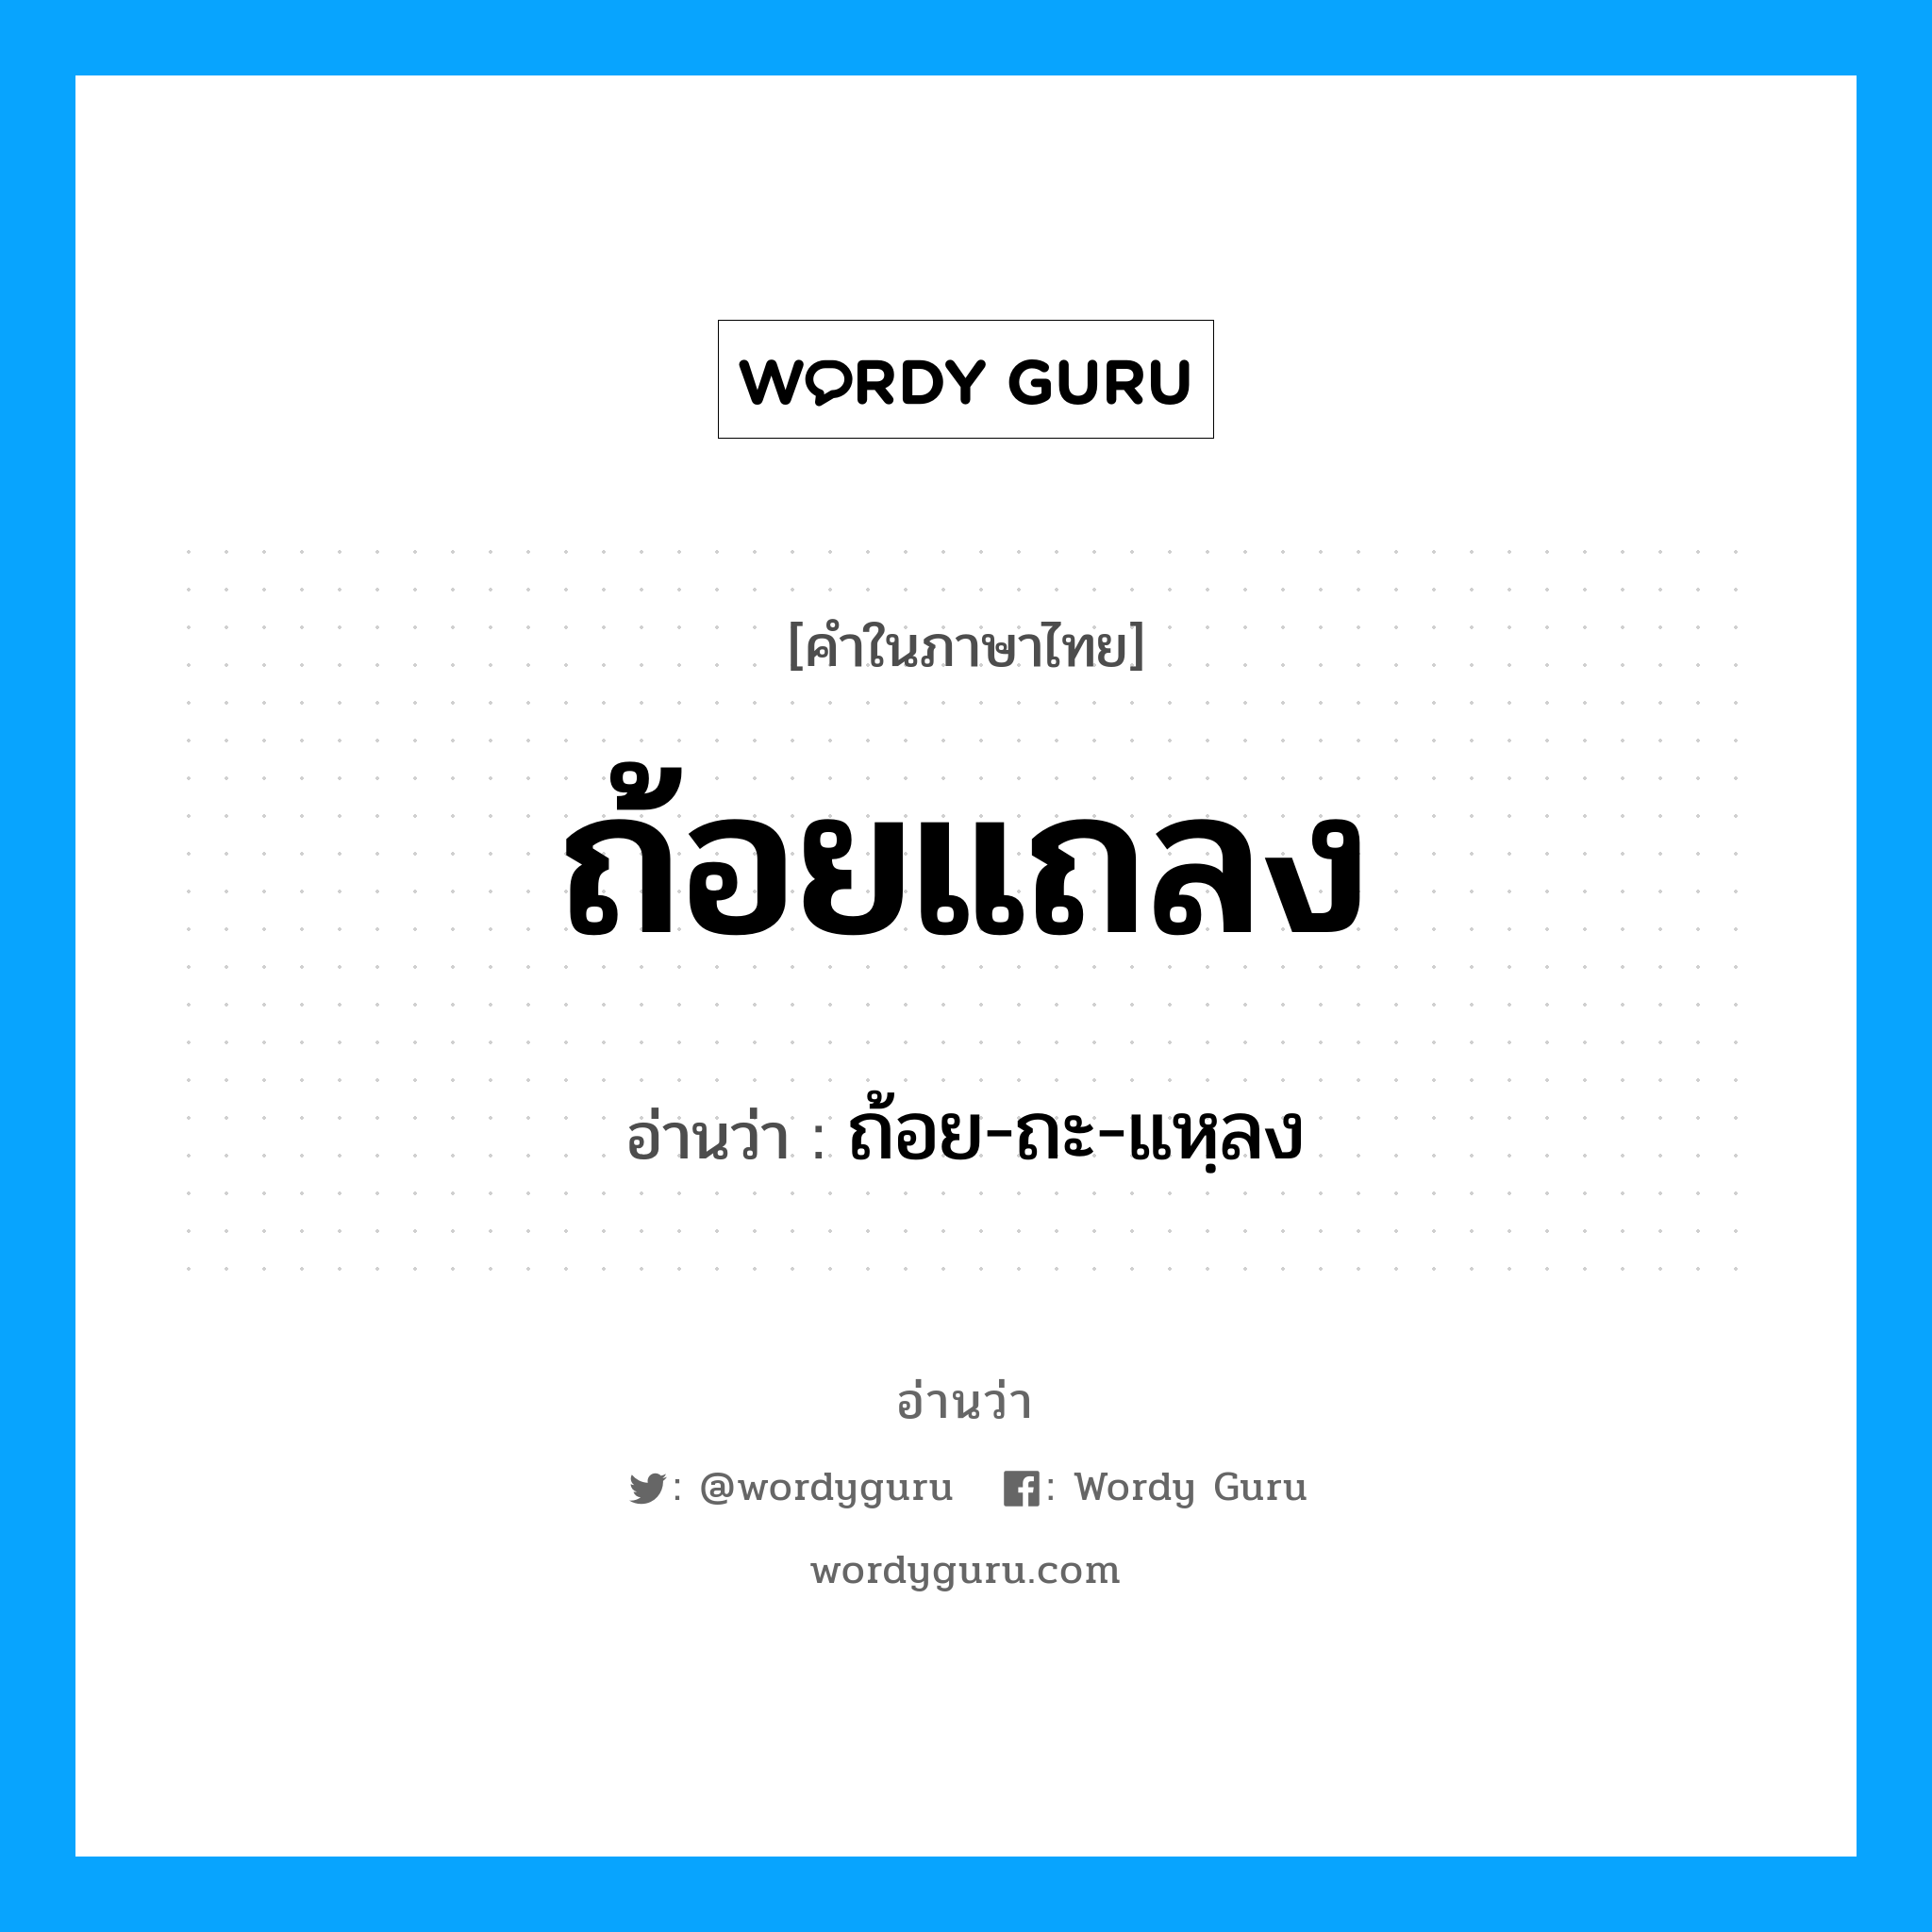 ถ้อย-ถะ-แหฺลง เป็นคำอ่านของคำไหน?, คำในภาษาไทย ถ้อย-ถะ-แหฺลง อ่านว่า ถ้อยแถลง